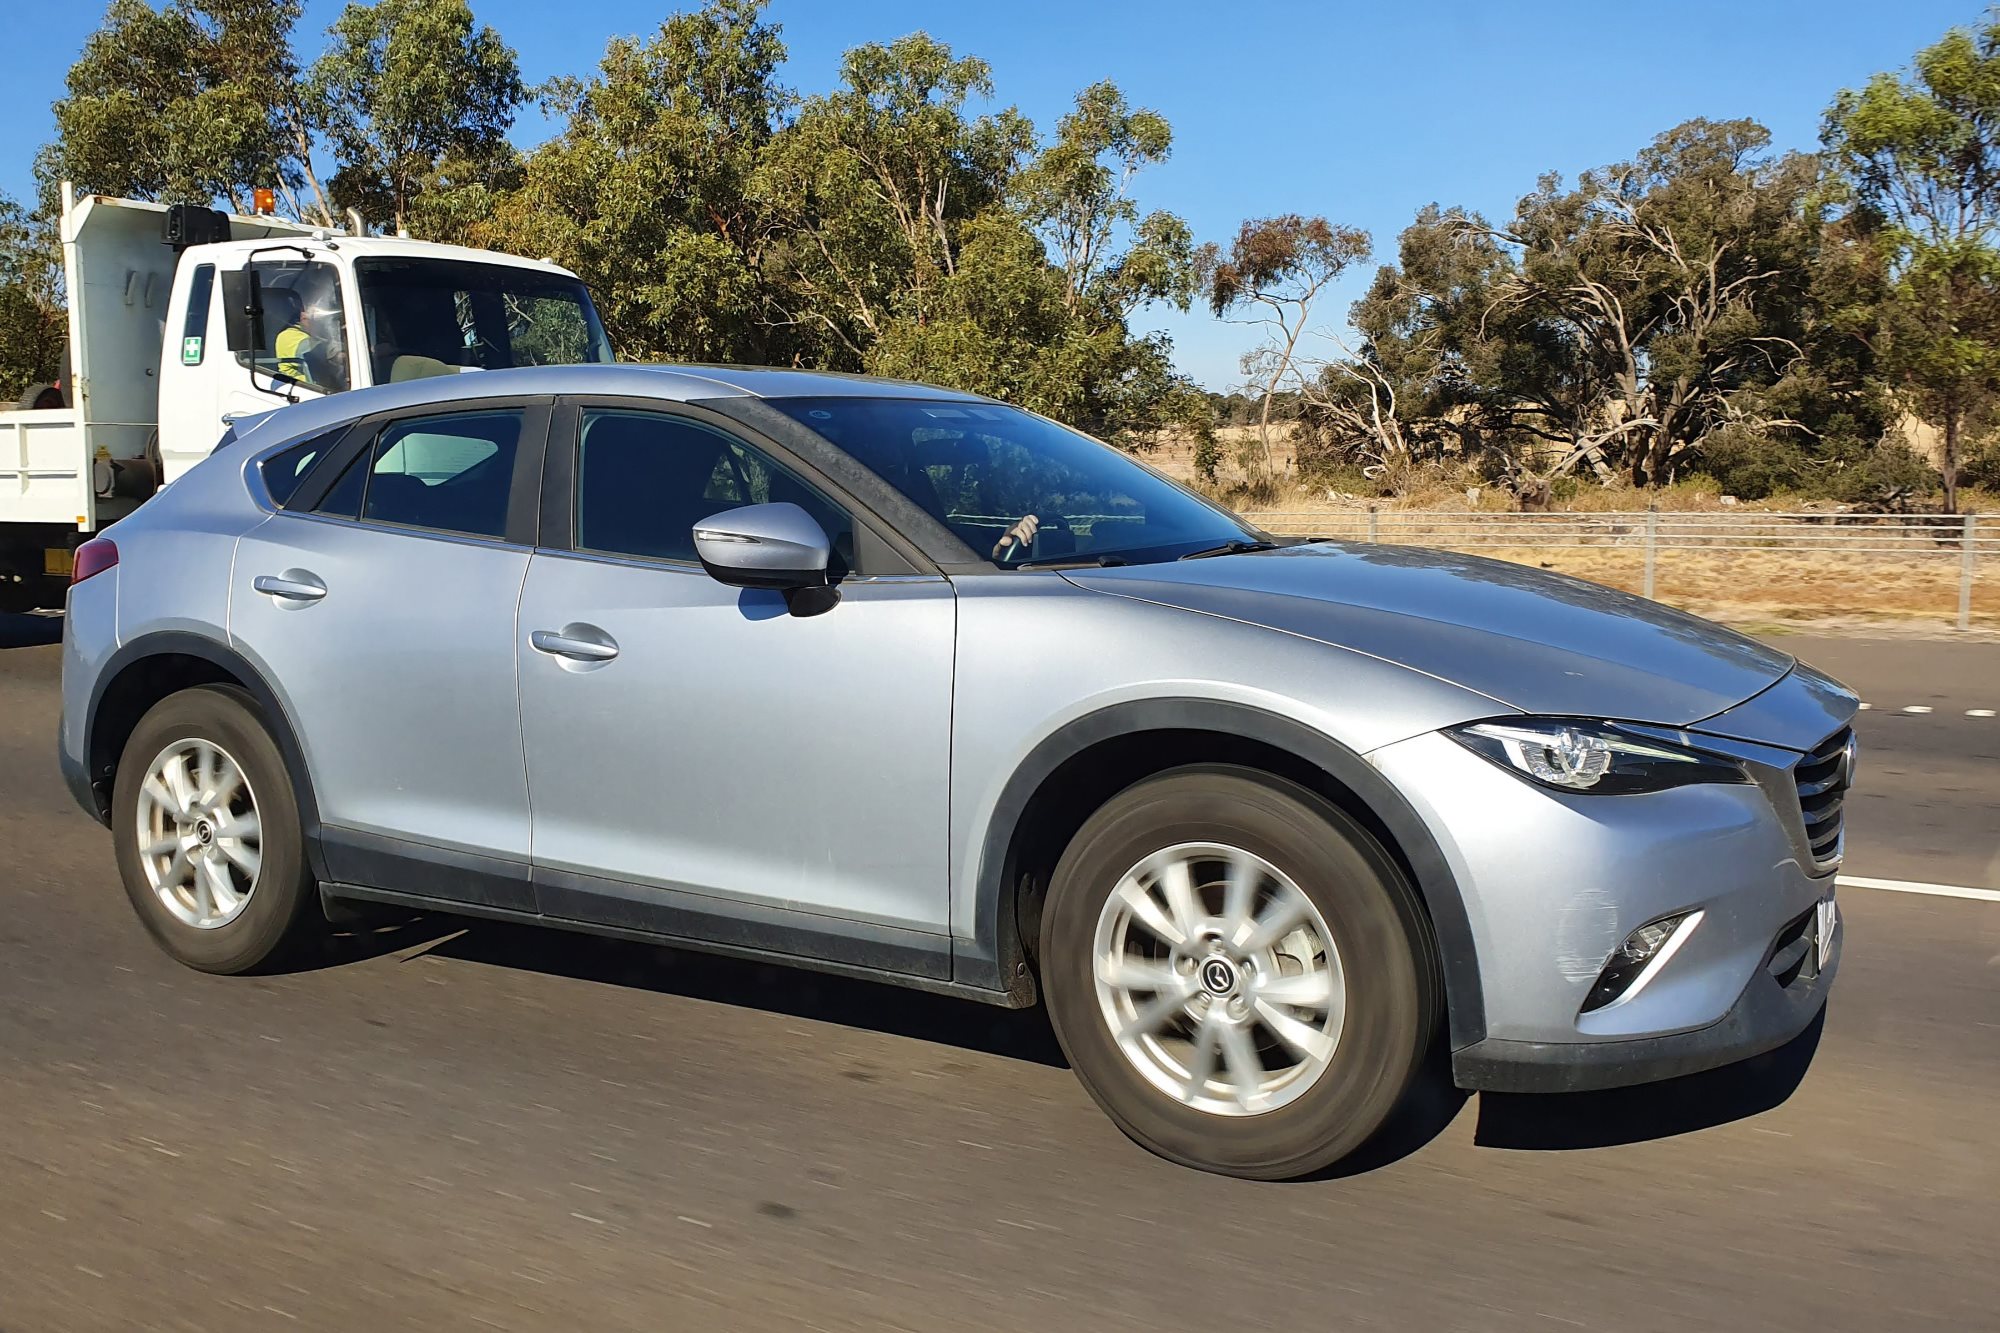 Mazda CX-4 spied testing in Australia